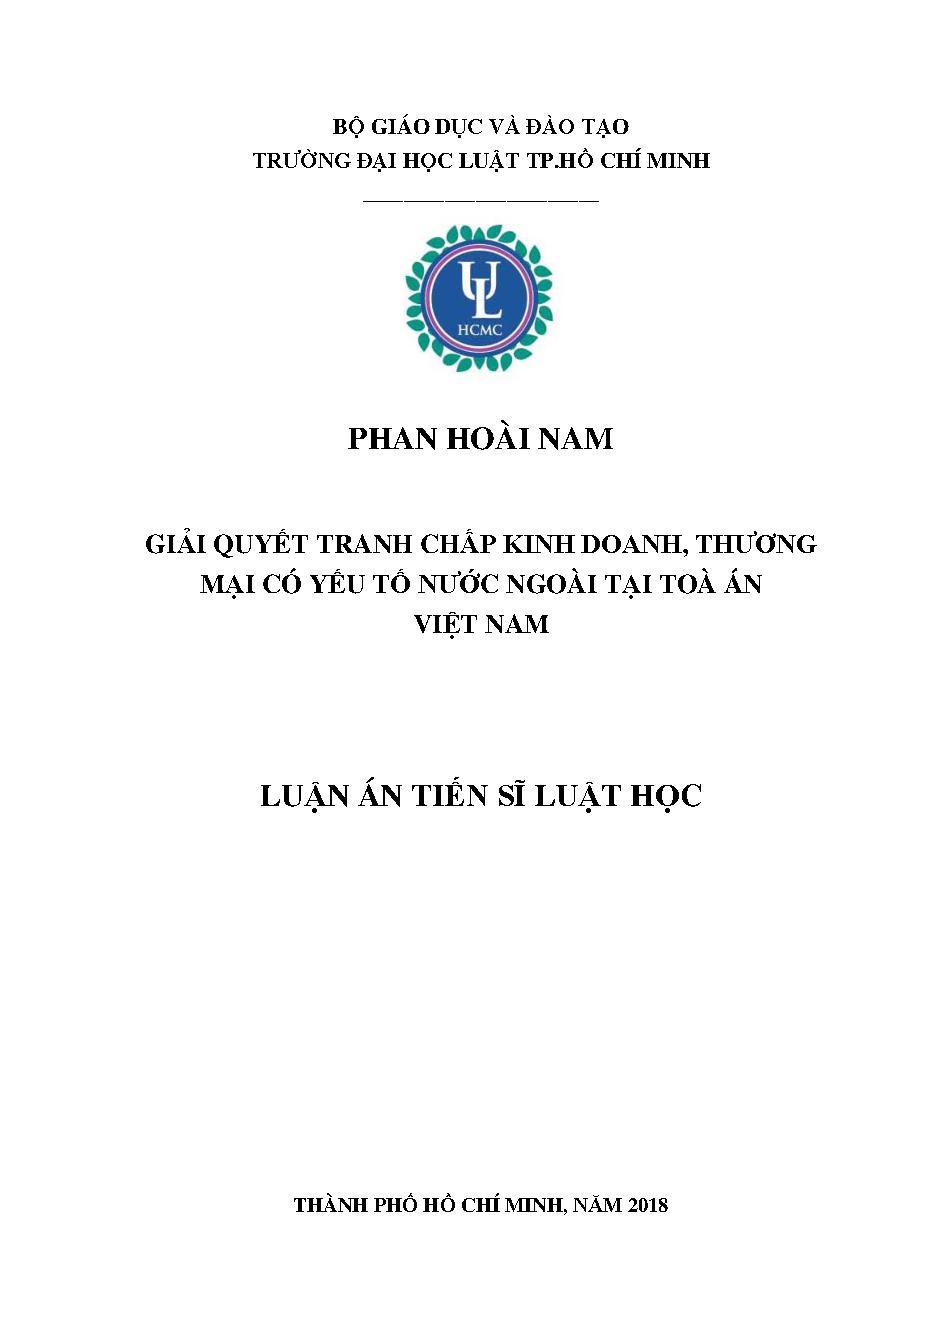 Giải quyết tranh chấp kinh doanh thương mại có yếu tố nước ngoài tại toà án Việt Nam